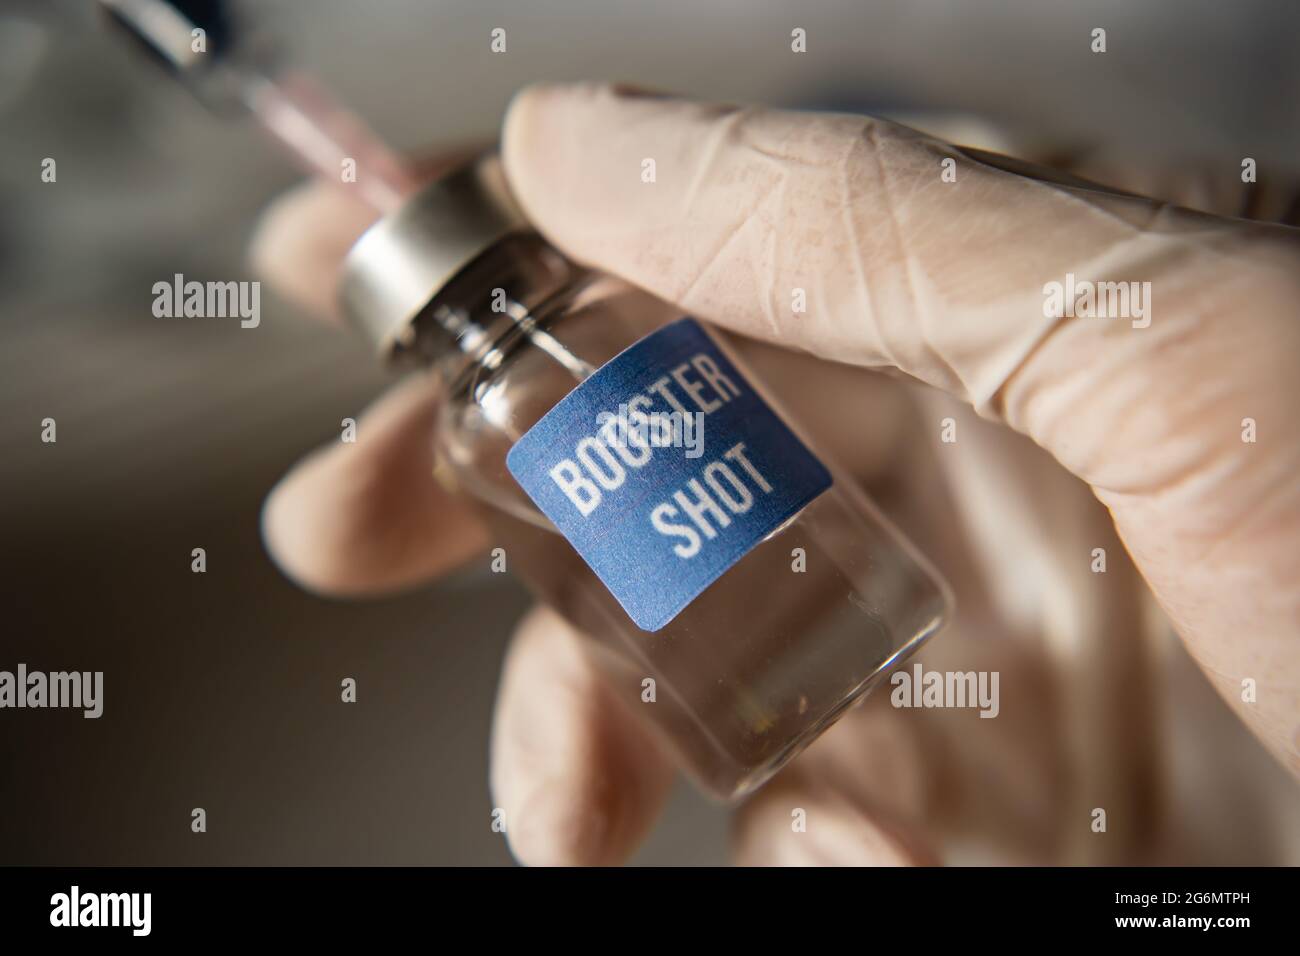 Covid-19 booster shot vaccine concept Stock Photo